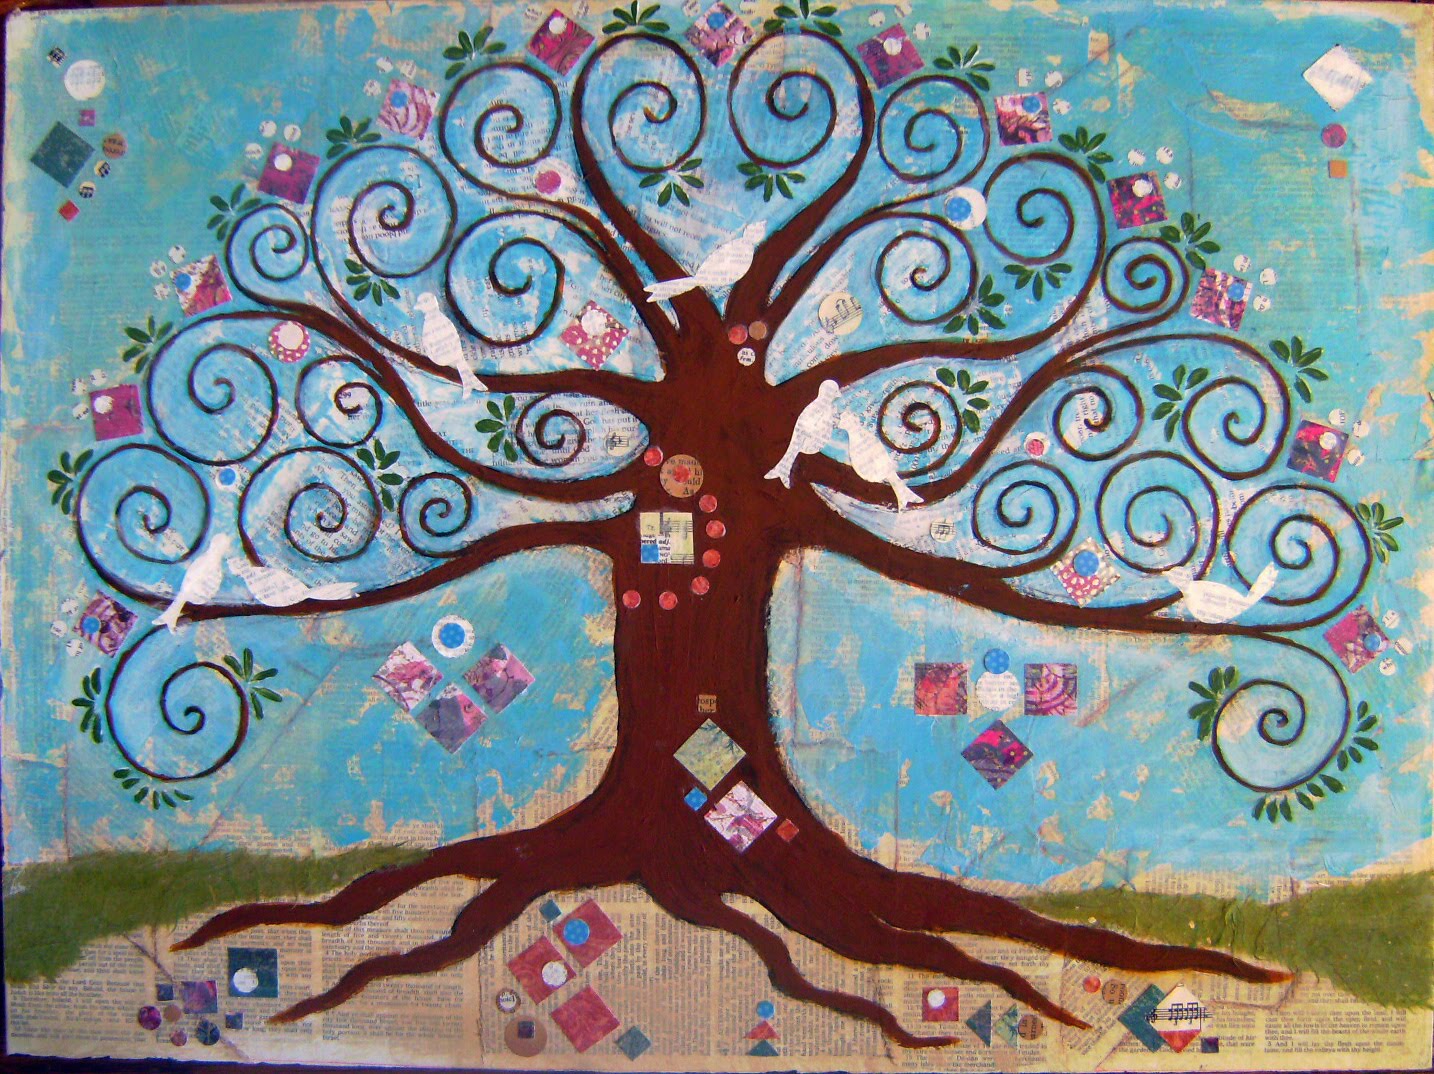 Изобразительное искусство в жизни людей. Чудо дерево Древо жизни. Климт Древо жизни. "Tree of Life" ("дерево жизни") by degree. Сказочное дерево.